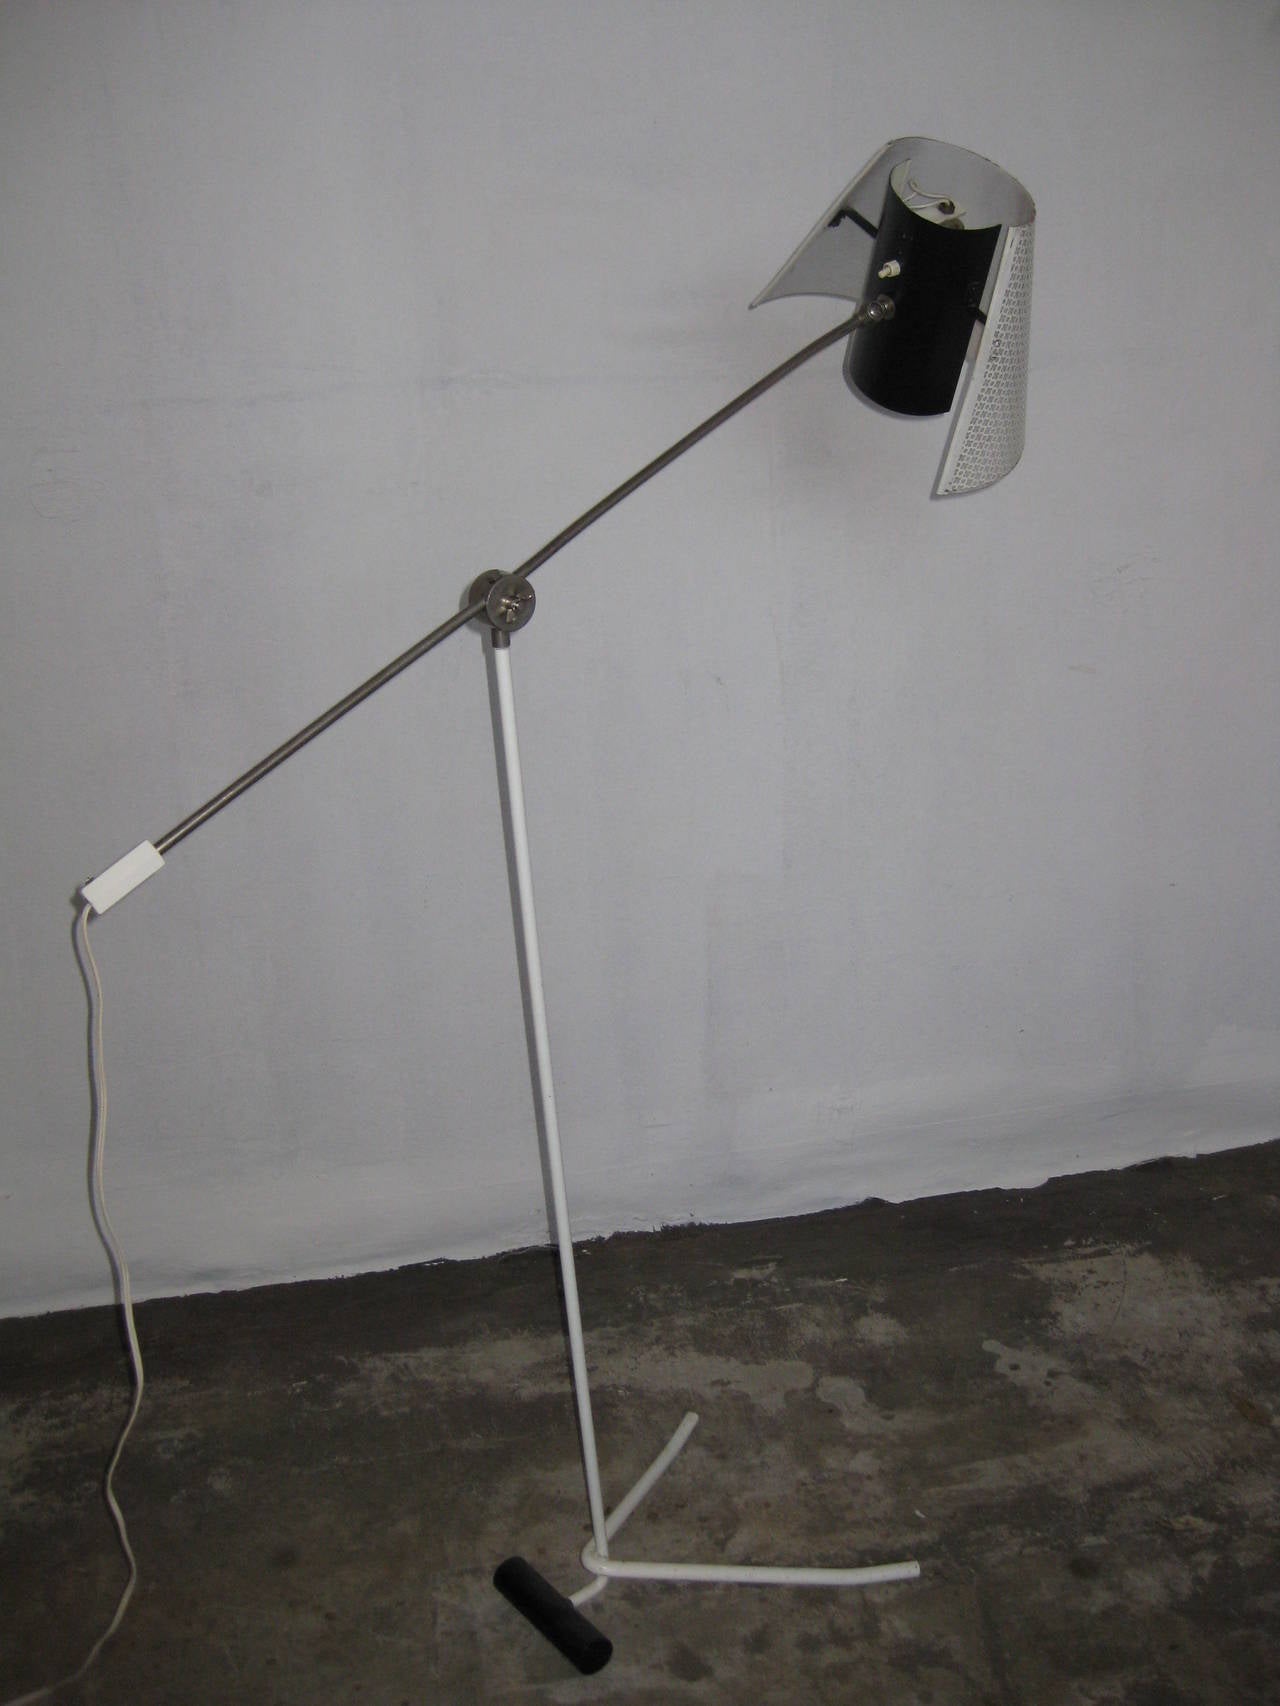 Une lampe sur pied originale des années 50 avec une base de 1m5cm de haut.
Le bras est réglable et s'étend sur 98 cm. Dans la position photographiée, il mesure 1m37 cm de haut mais vous pouvez bien sûr le baisser ou le monter.
La lampe est en